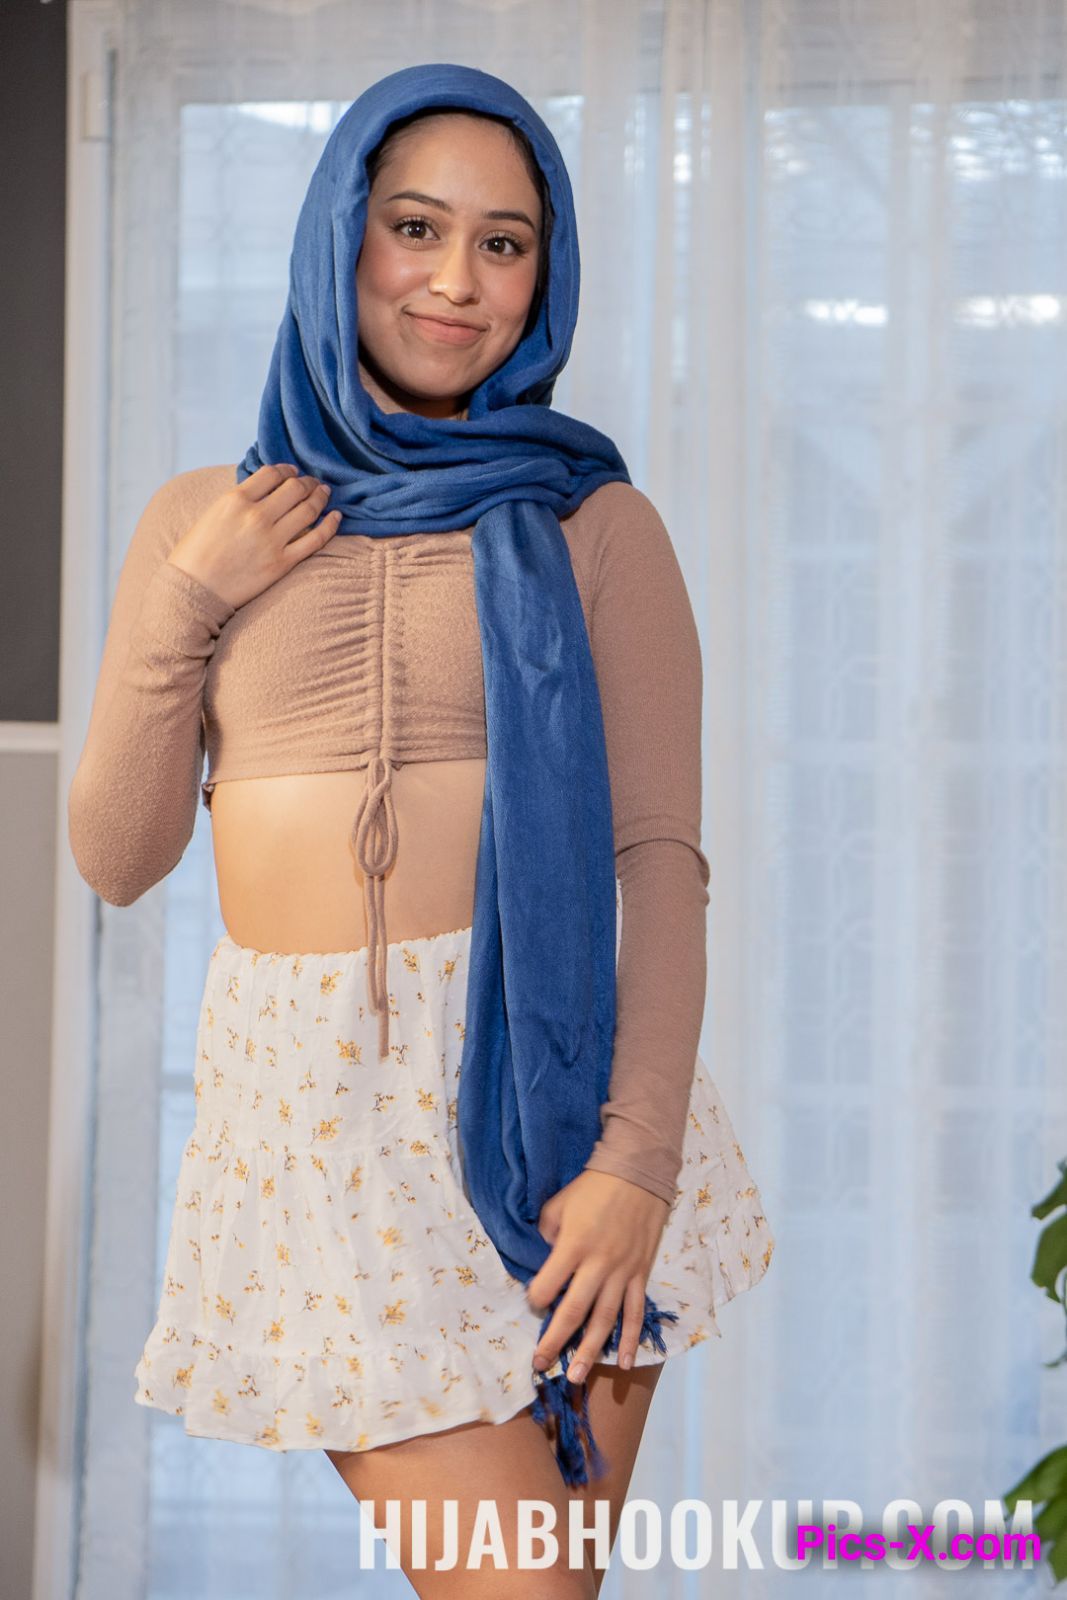 Teach Me, StepBrother - Hijab Hookup - Image 1